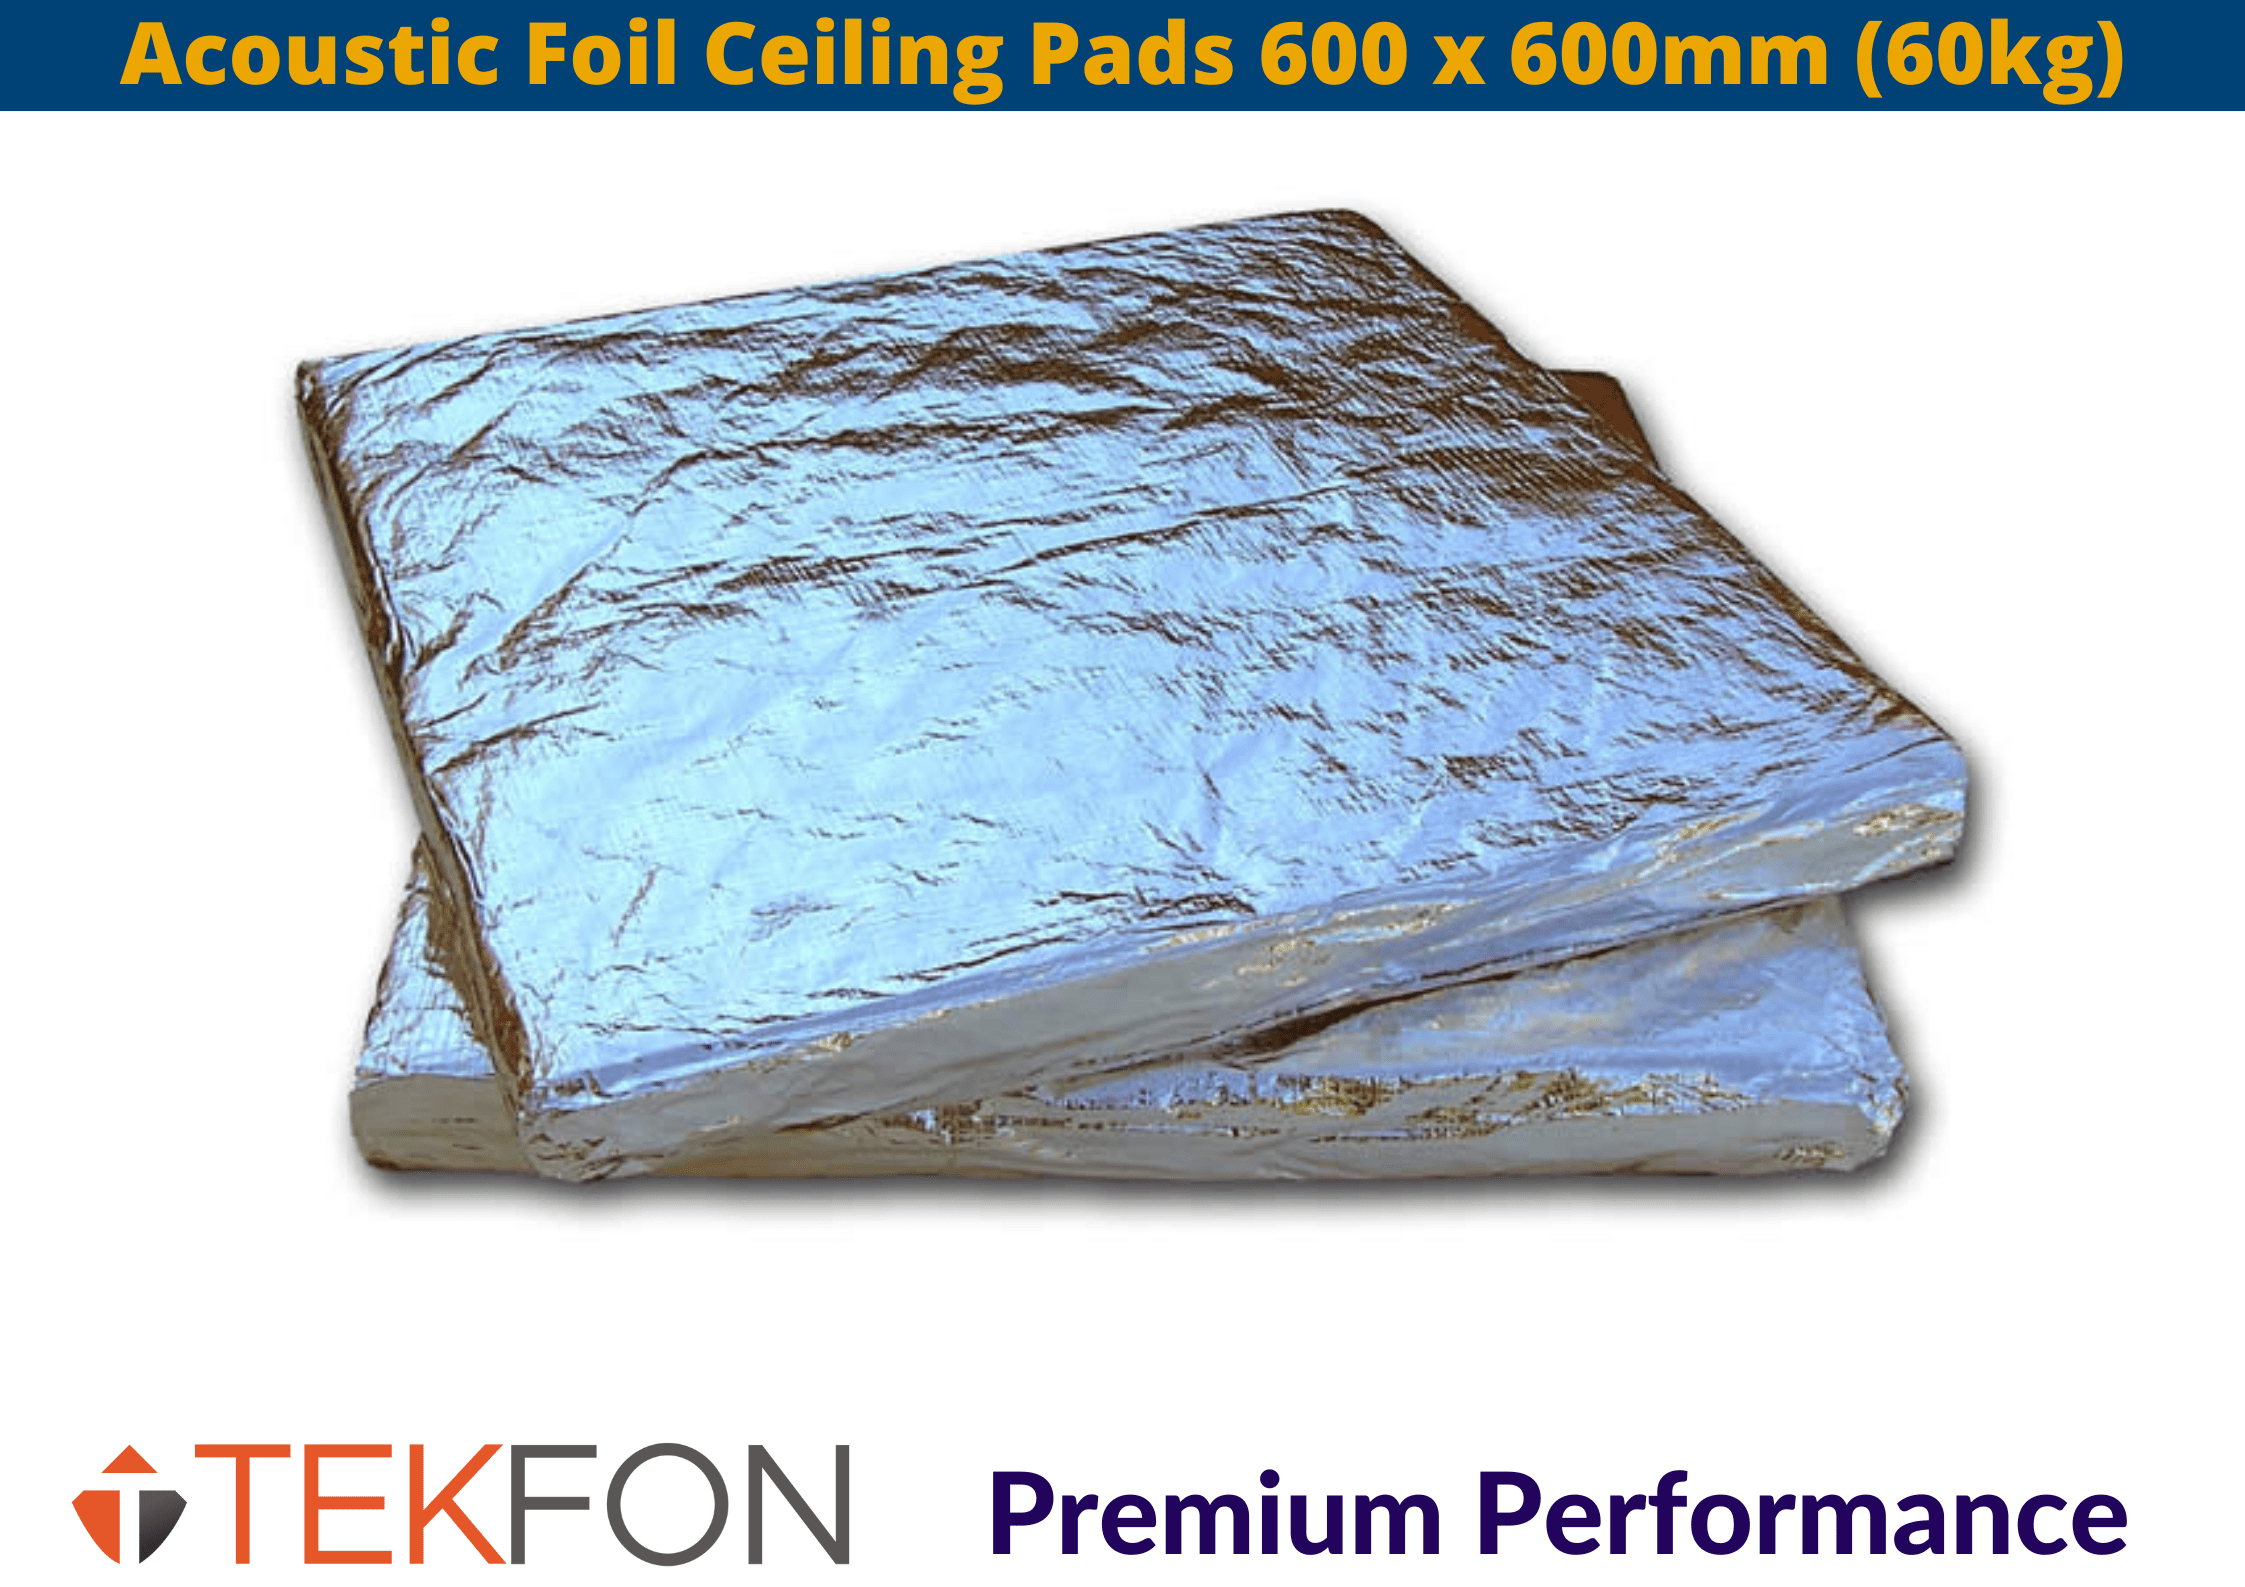 Tekfon Tekfon Acoustic Foil Ceiling Pads | 600 x 600mm (60kgm3) Acoustic Foil Ceiling Pads 600 x 600mm (60kg) | insulationuk.co.uk